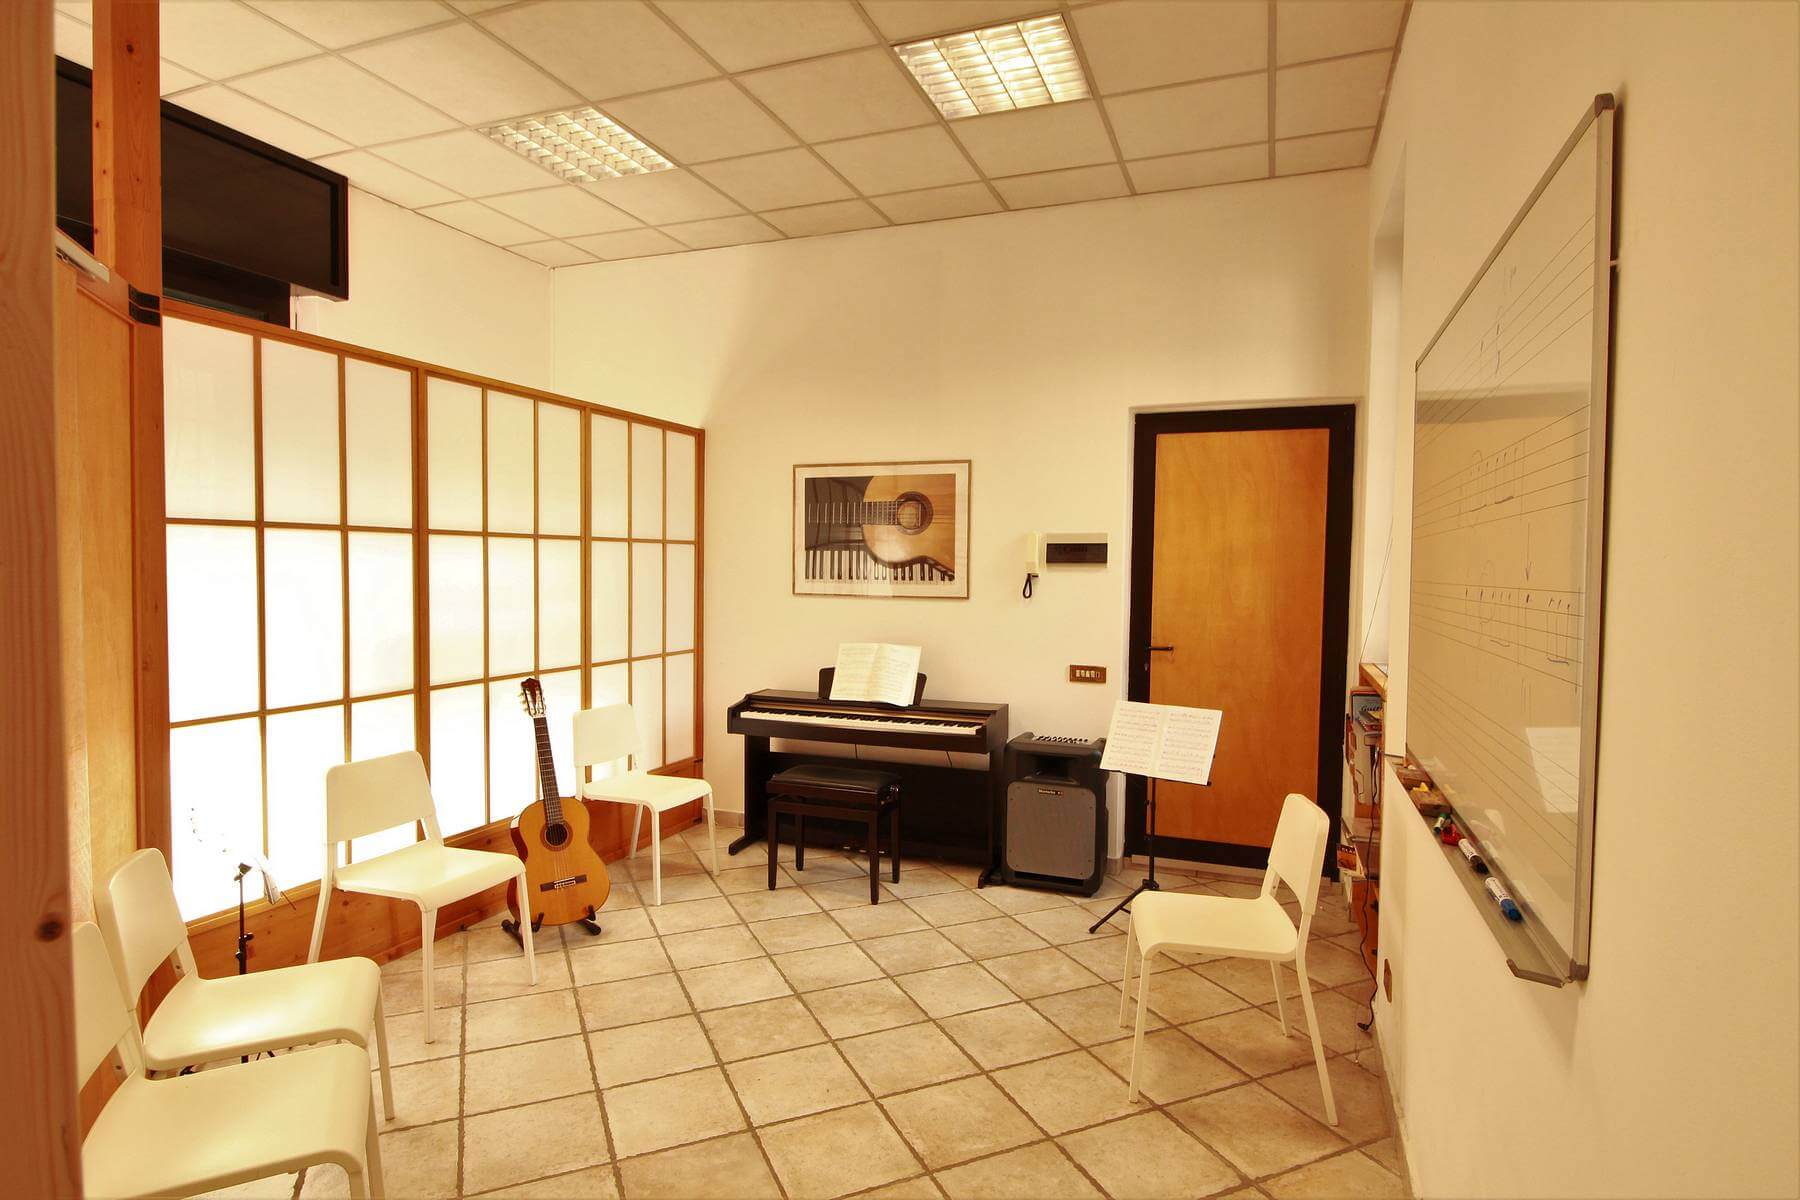 Un'aula di musica con una chitarra e un pianoforte, pronti per essere suonati